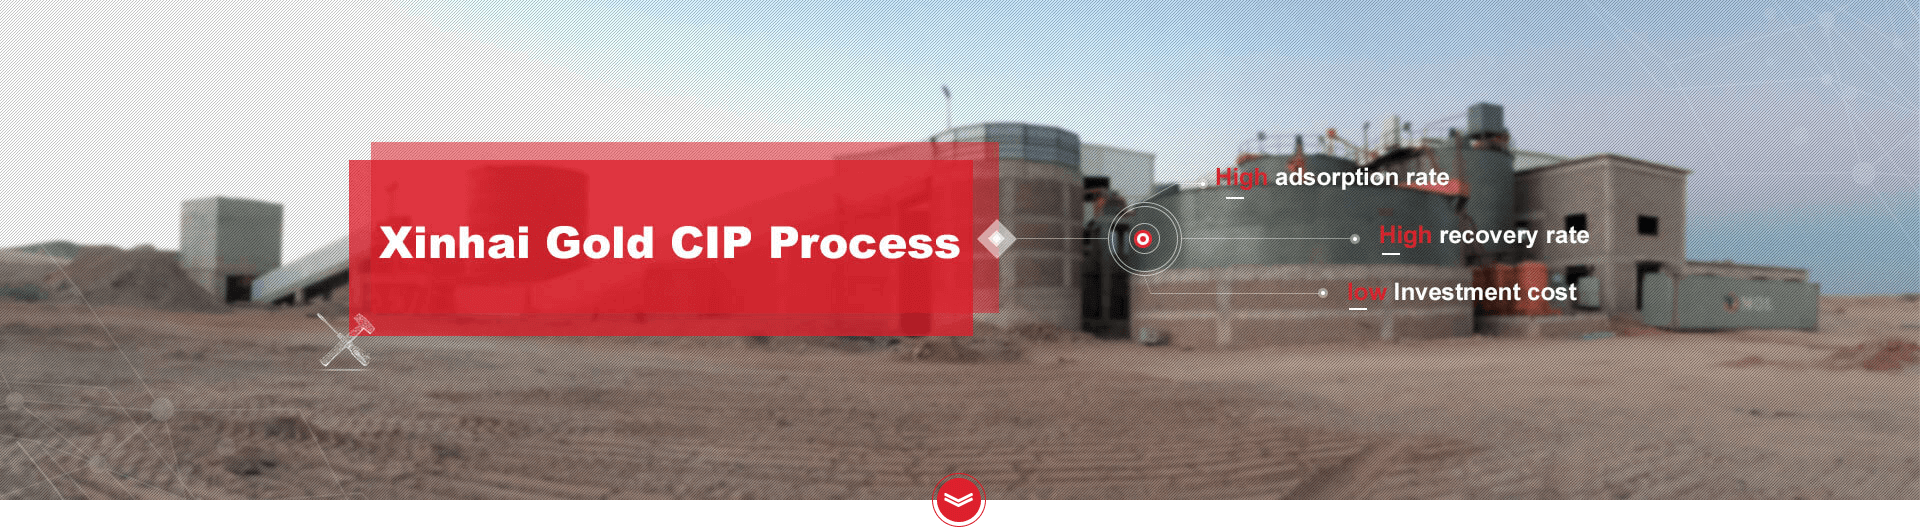 Xinhai Gold CIP Process